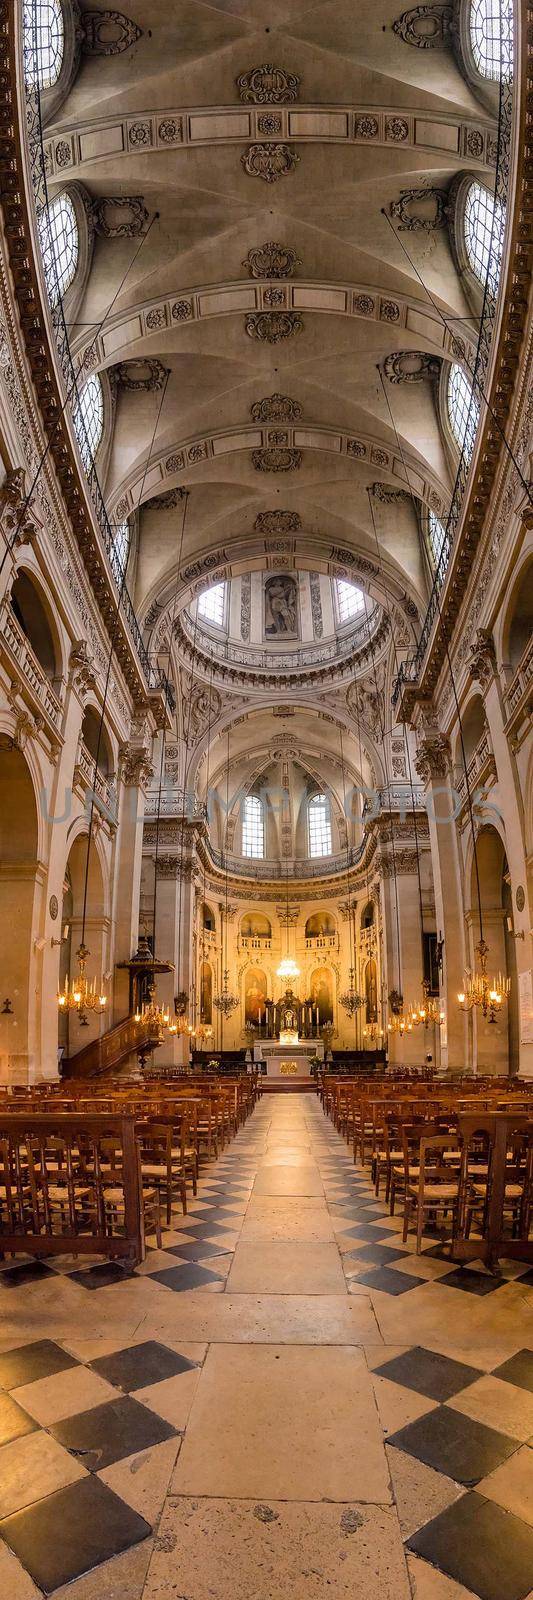 Notre Dame de Paris. Internal view by jyurinko